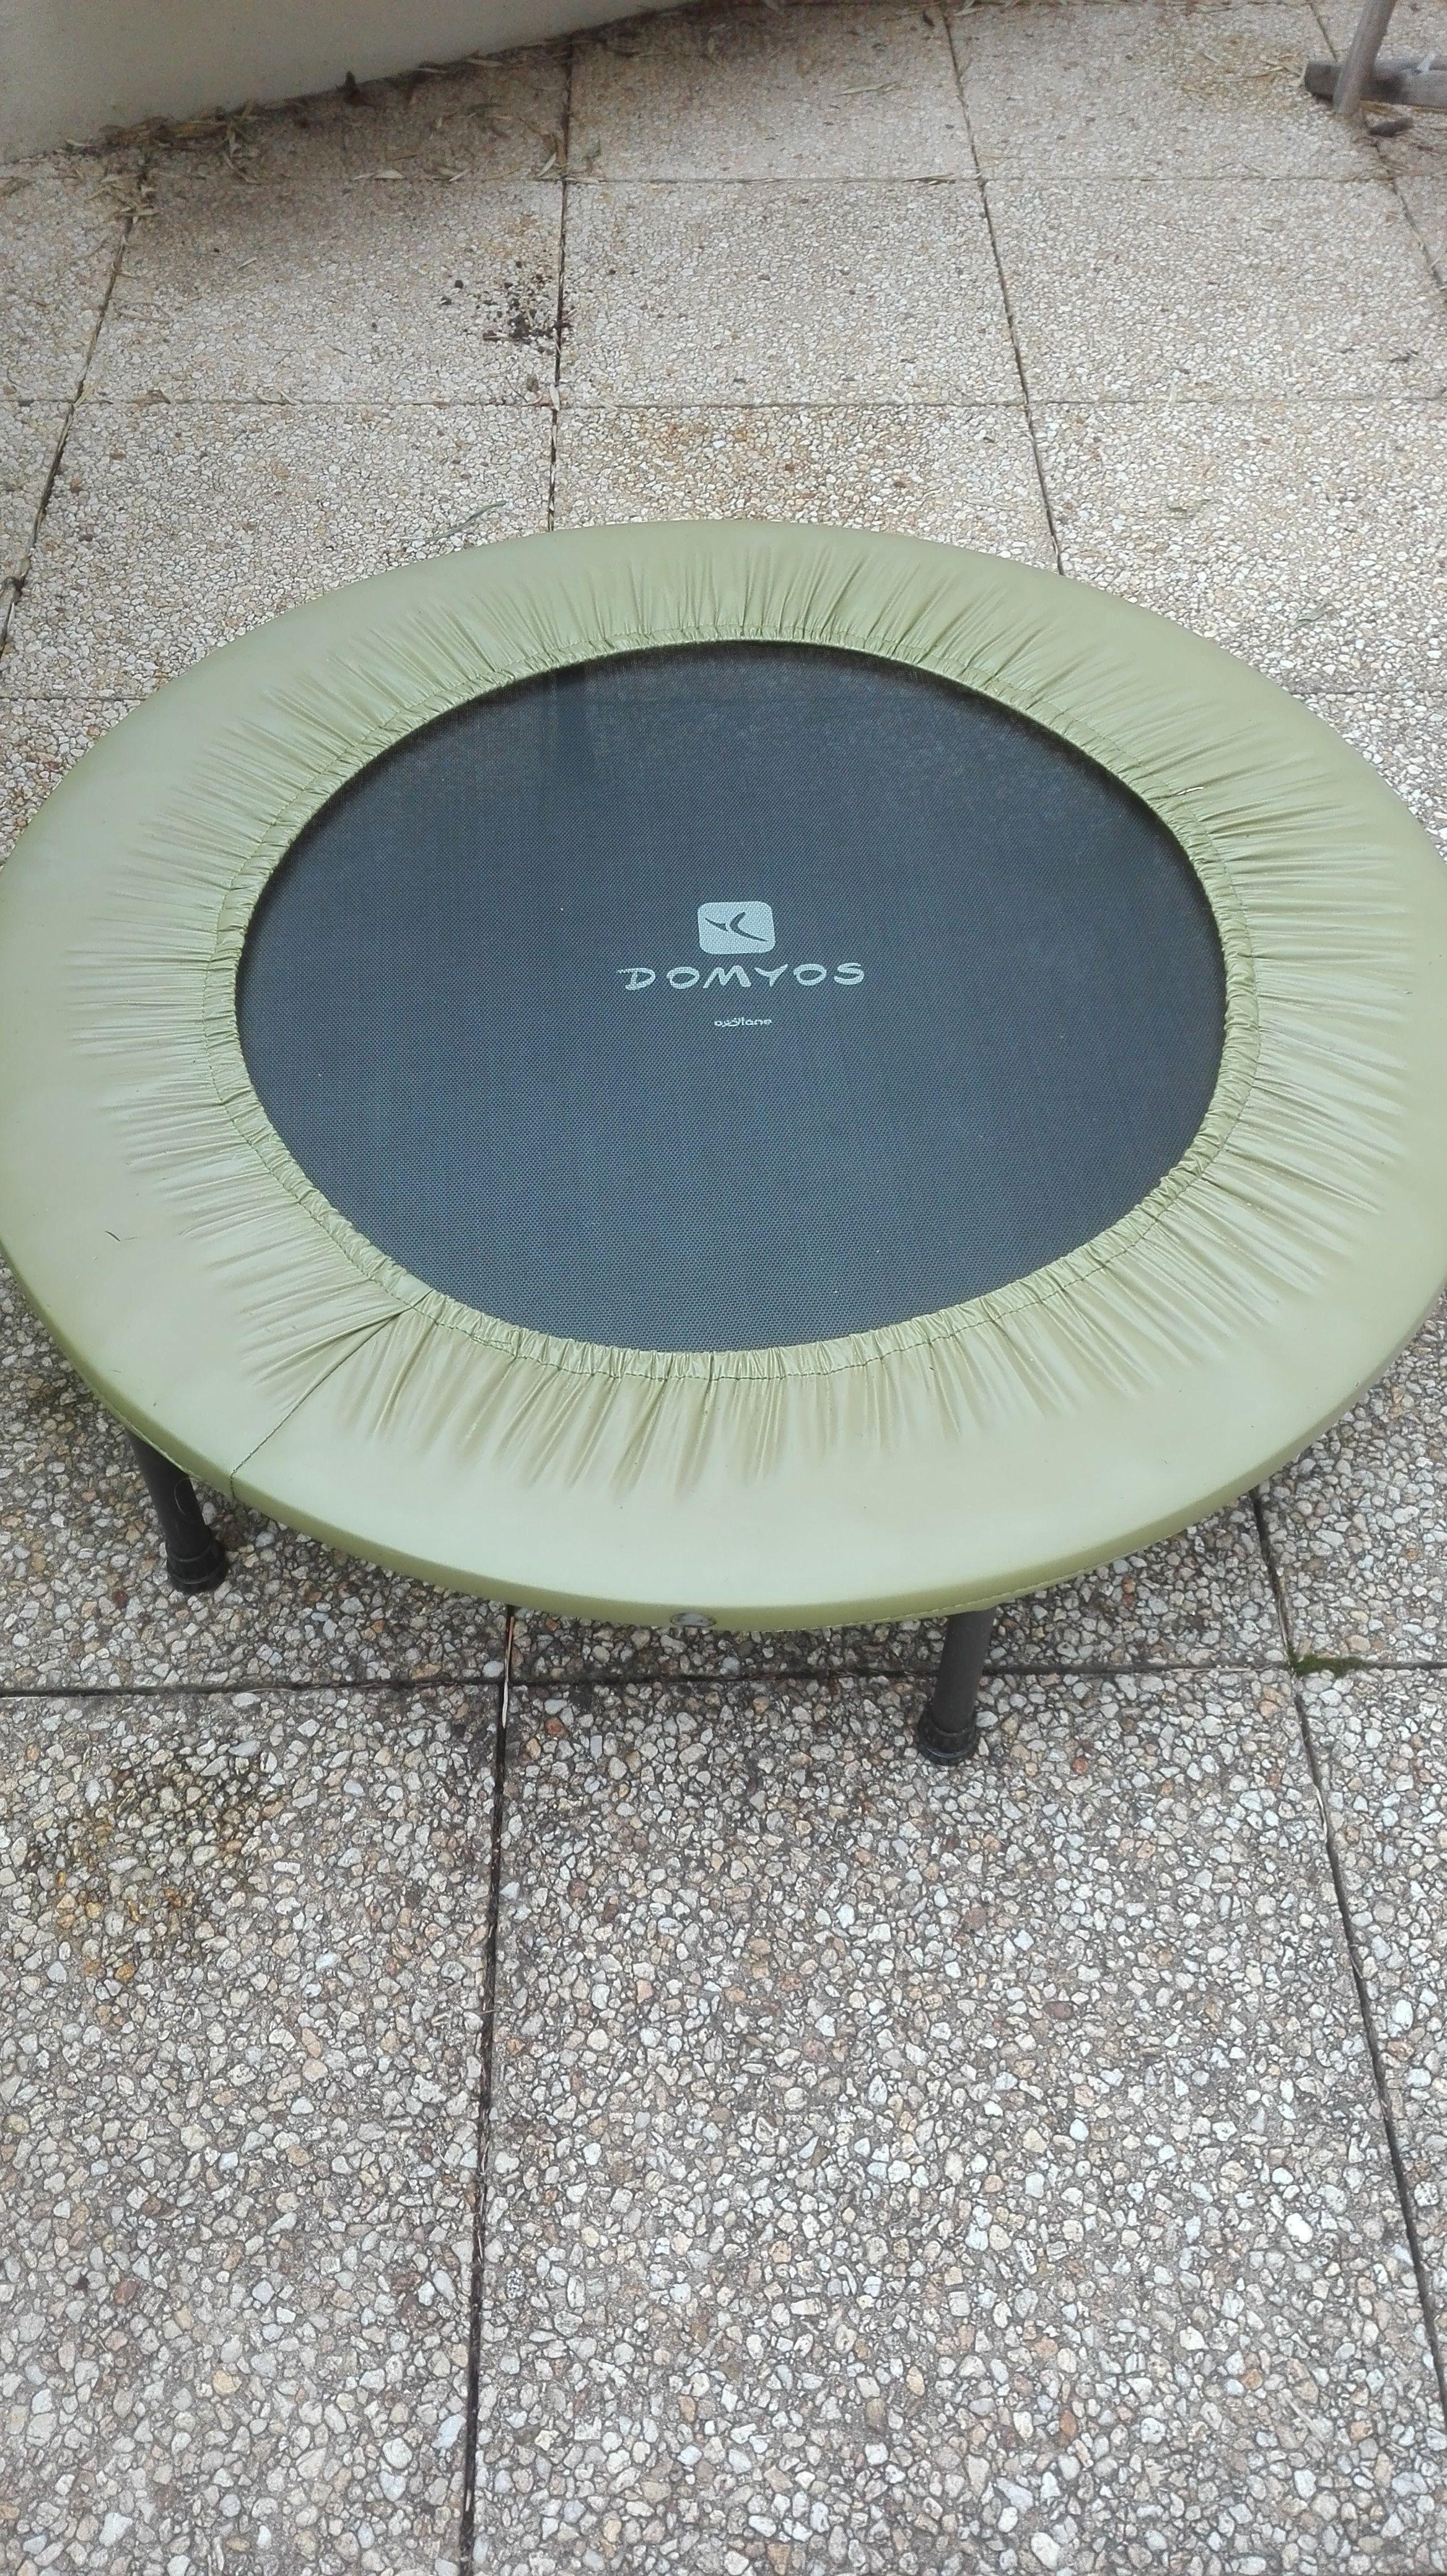 troc de troc echange trampoline contre velo taille 24 pouces image 0